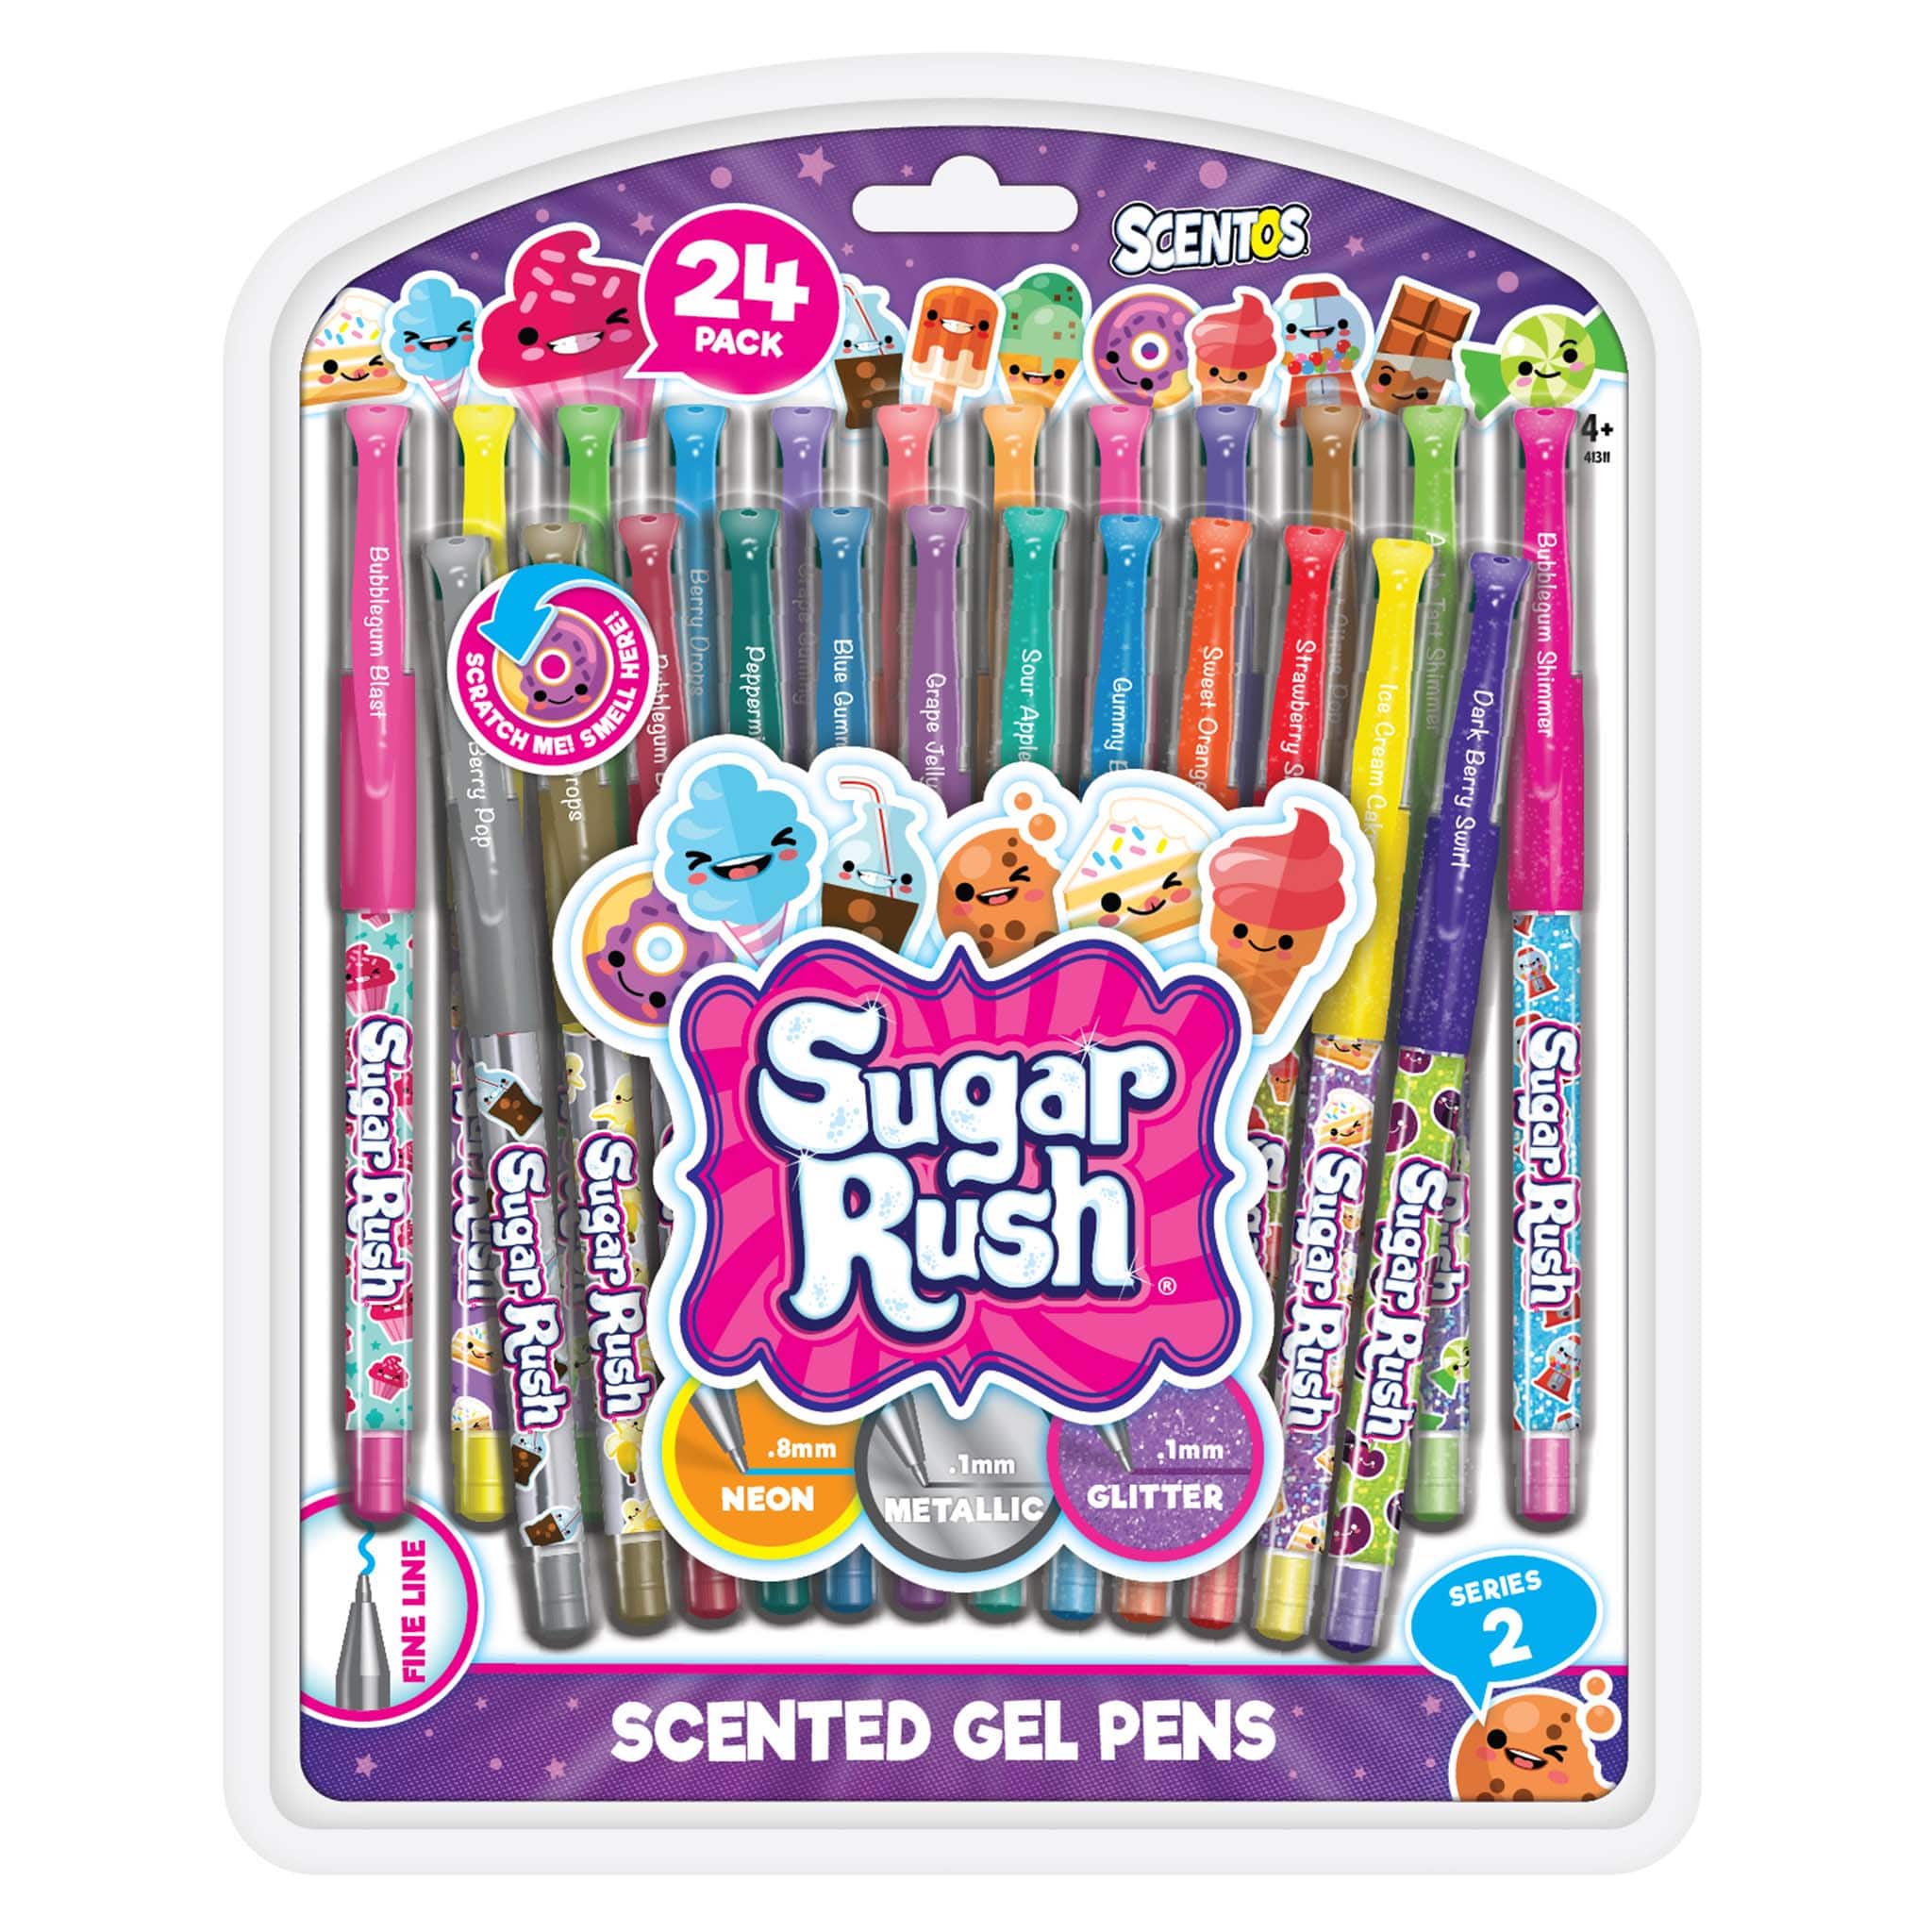 Discounted Bundle Offers  Colored pencil set, Pen sets, Gel pens set